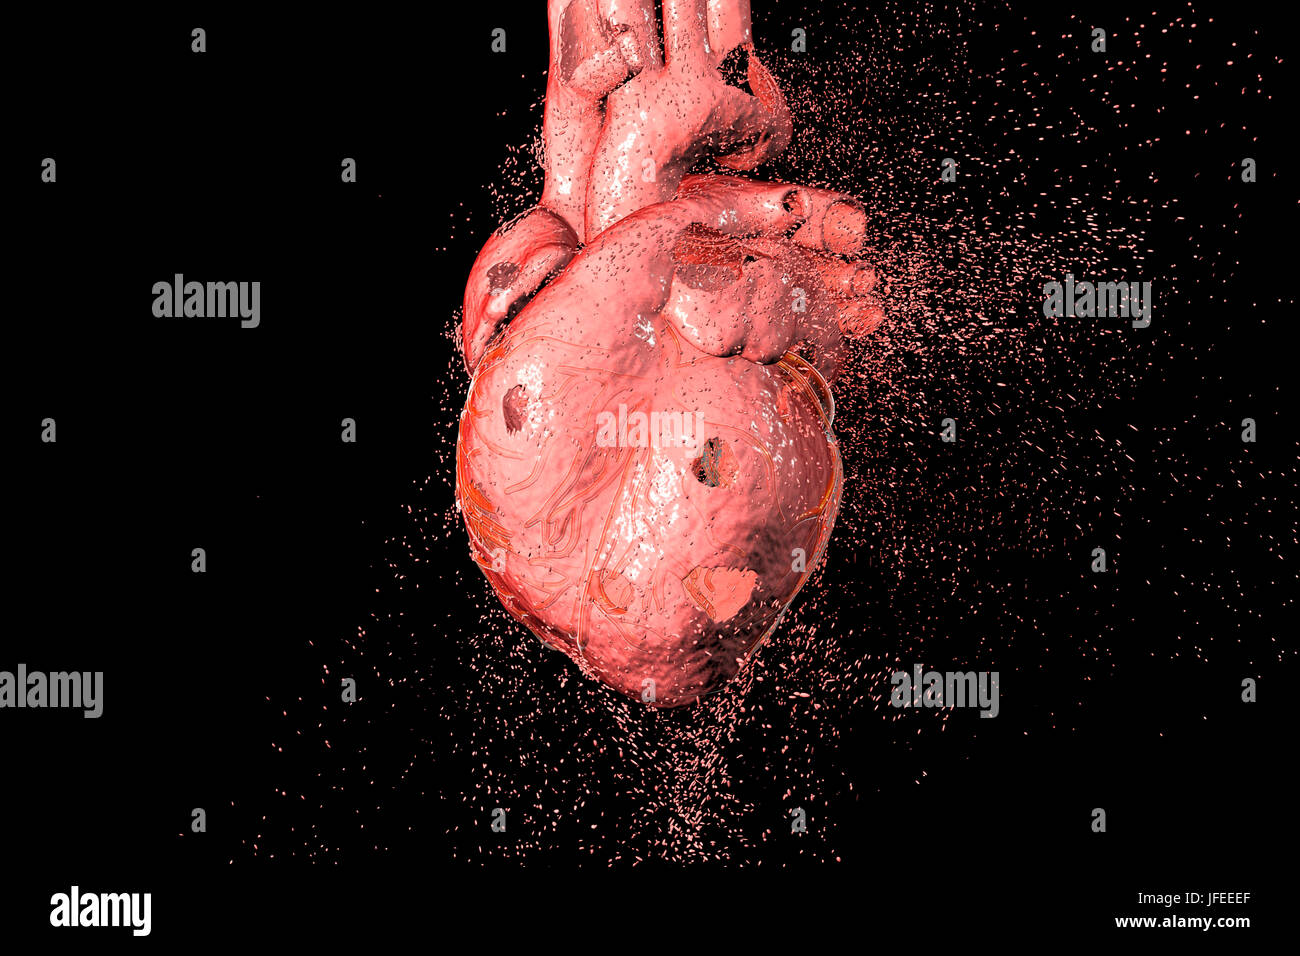 Herz-Zerstörung. Konzeptionelle Computer Illustration, die verwendet werden kann, um Herzerkrankungen zu veranschaulichen. Stockfoto